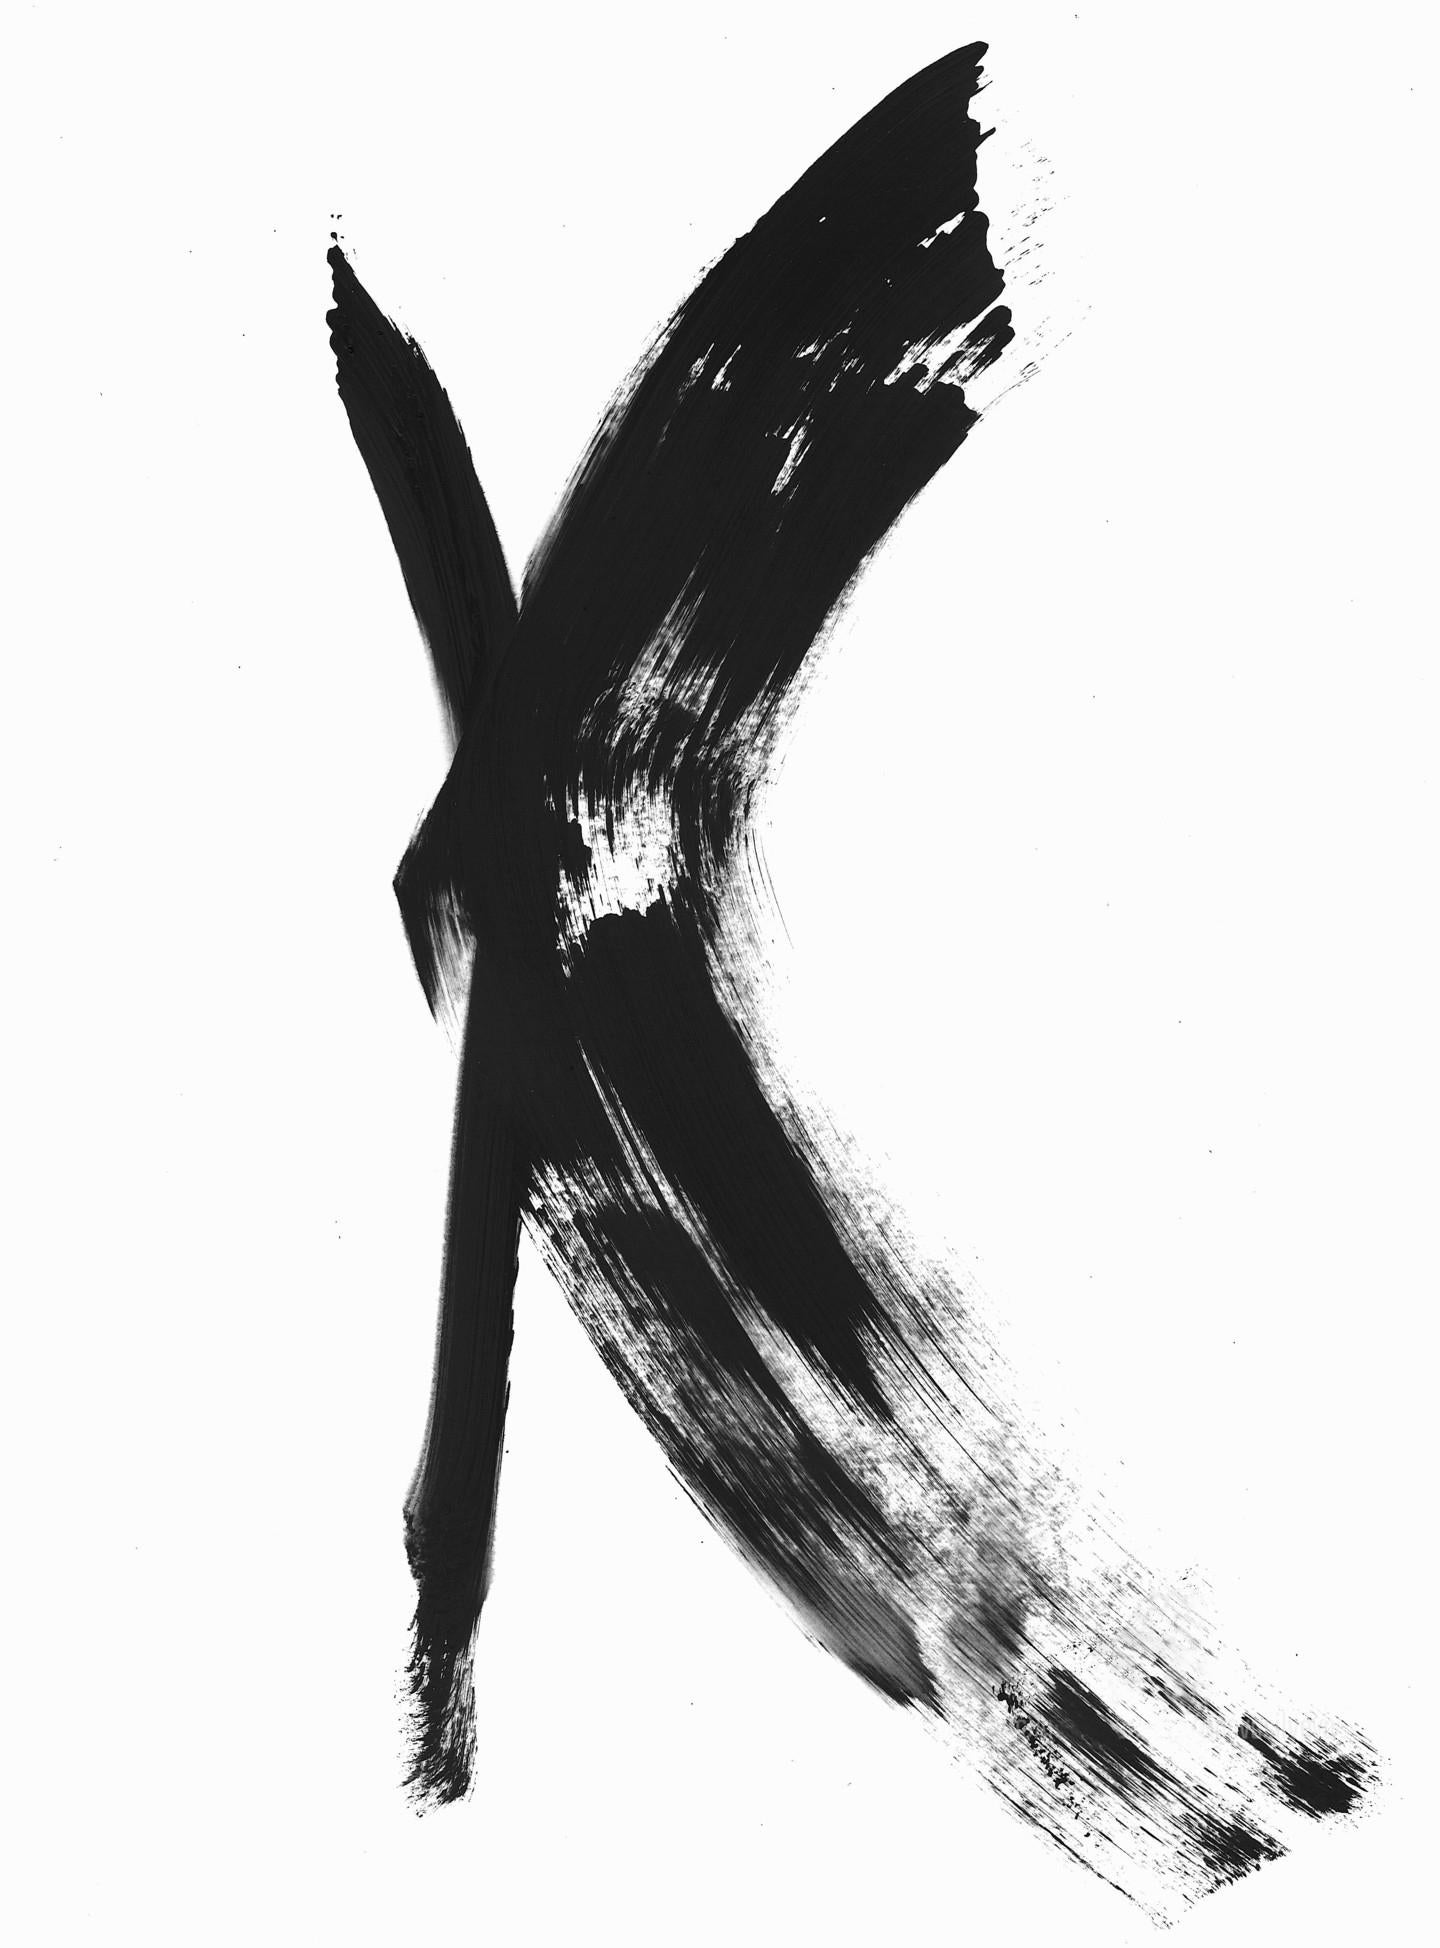 Anastasia Vasilyeva - Schwarz-Weiß-Abstraktion 020 (2020)

Gemälde auf hochwertigem, säurefreiem Papier mit hoher Dichte. Konzeptuelles, minimalistisches, abstraktes Gemälde im kalligrafischen Stil. Das Bild ist auf dickem Papier gemalt und kann für